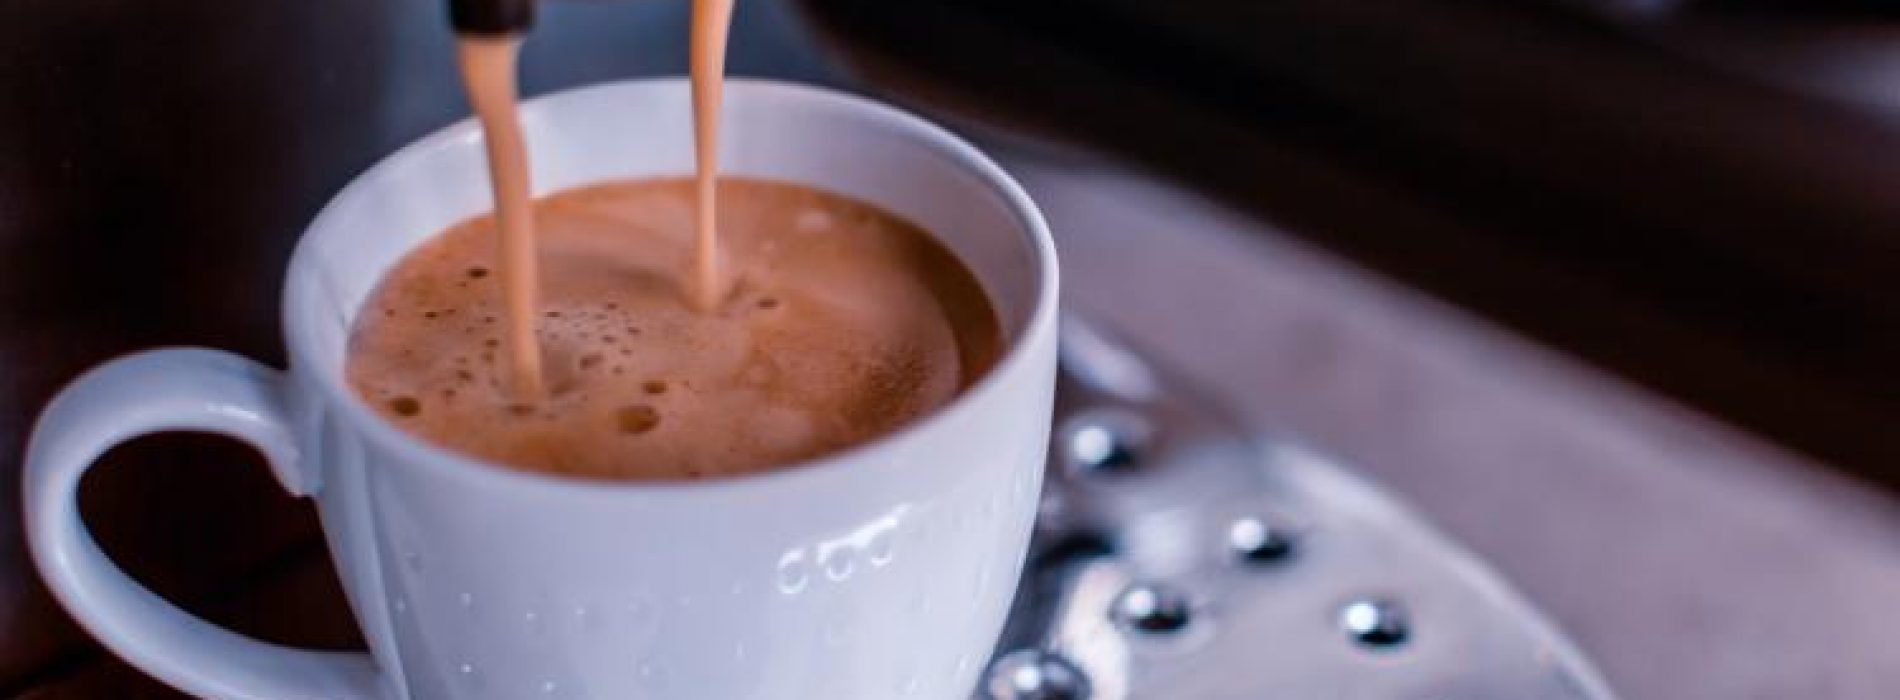 Het is officieel: koffiedrinkers leven langer